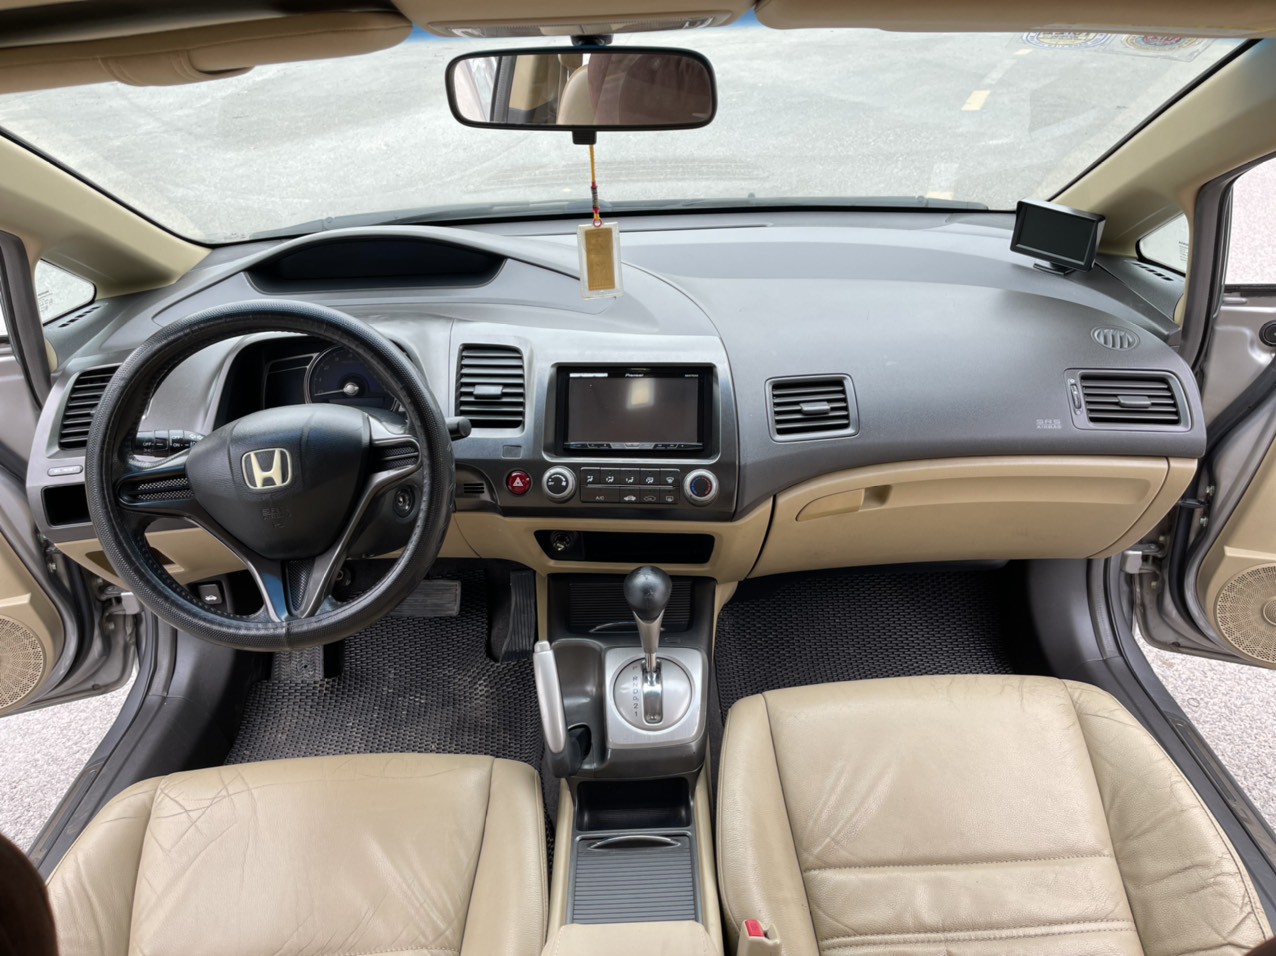 Cần bán xe Honda Civic 1.8AT 2009, màu xám